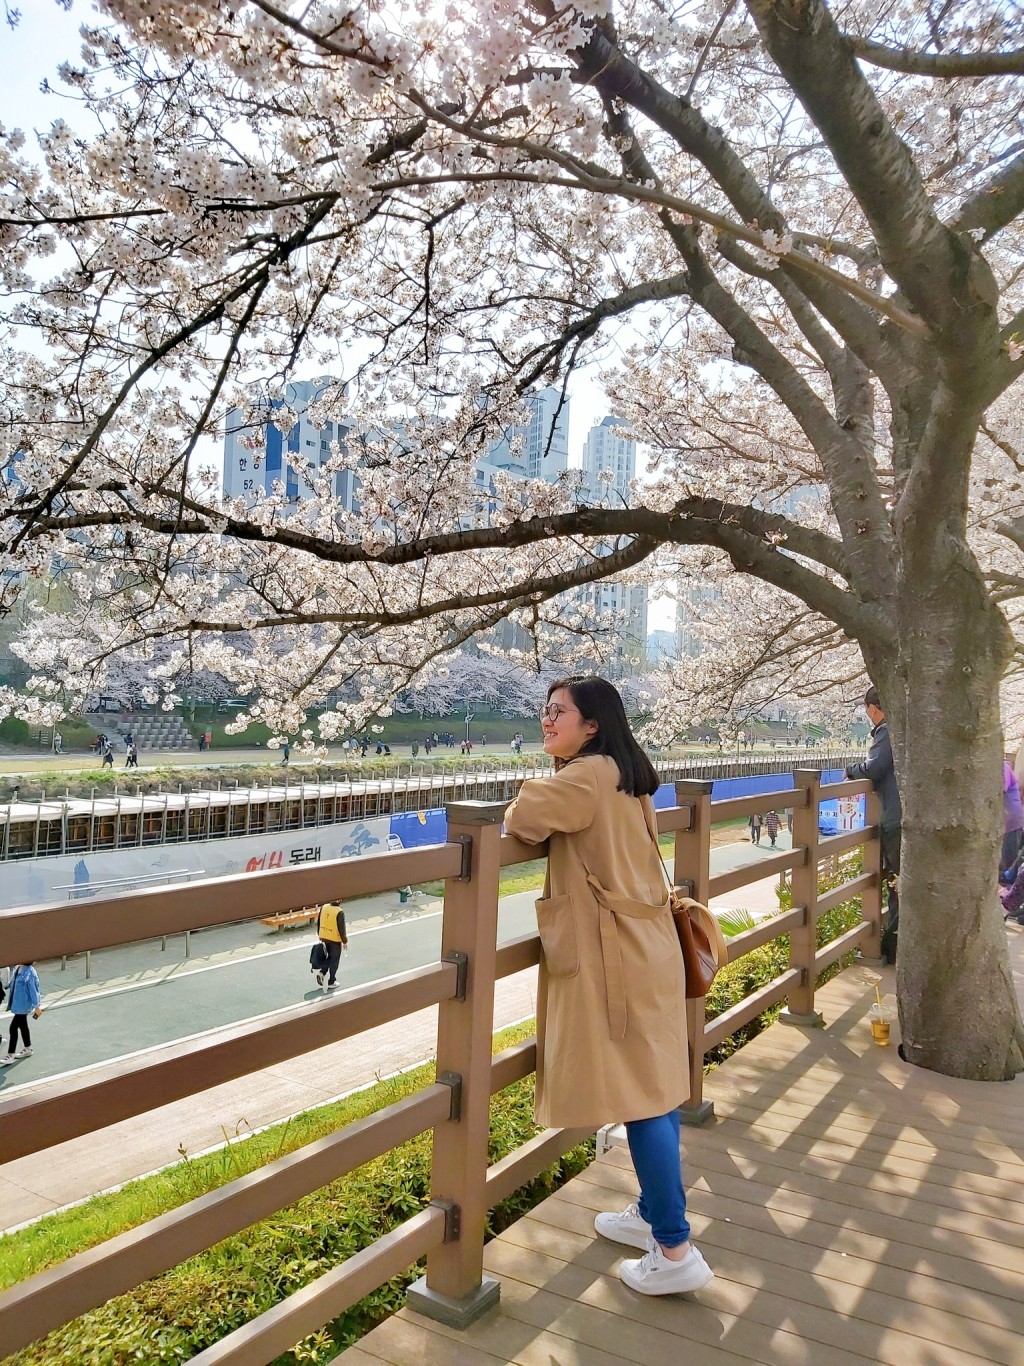 作者介紹釜山不少賞櫻熱點。